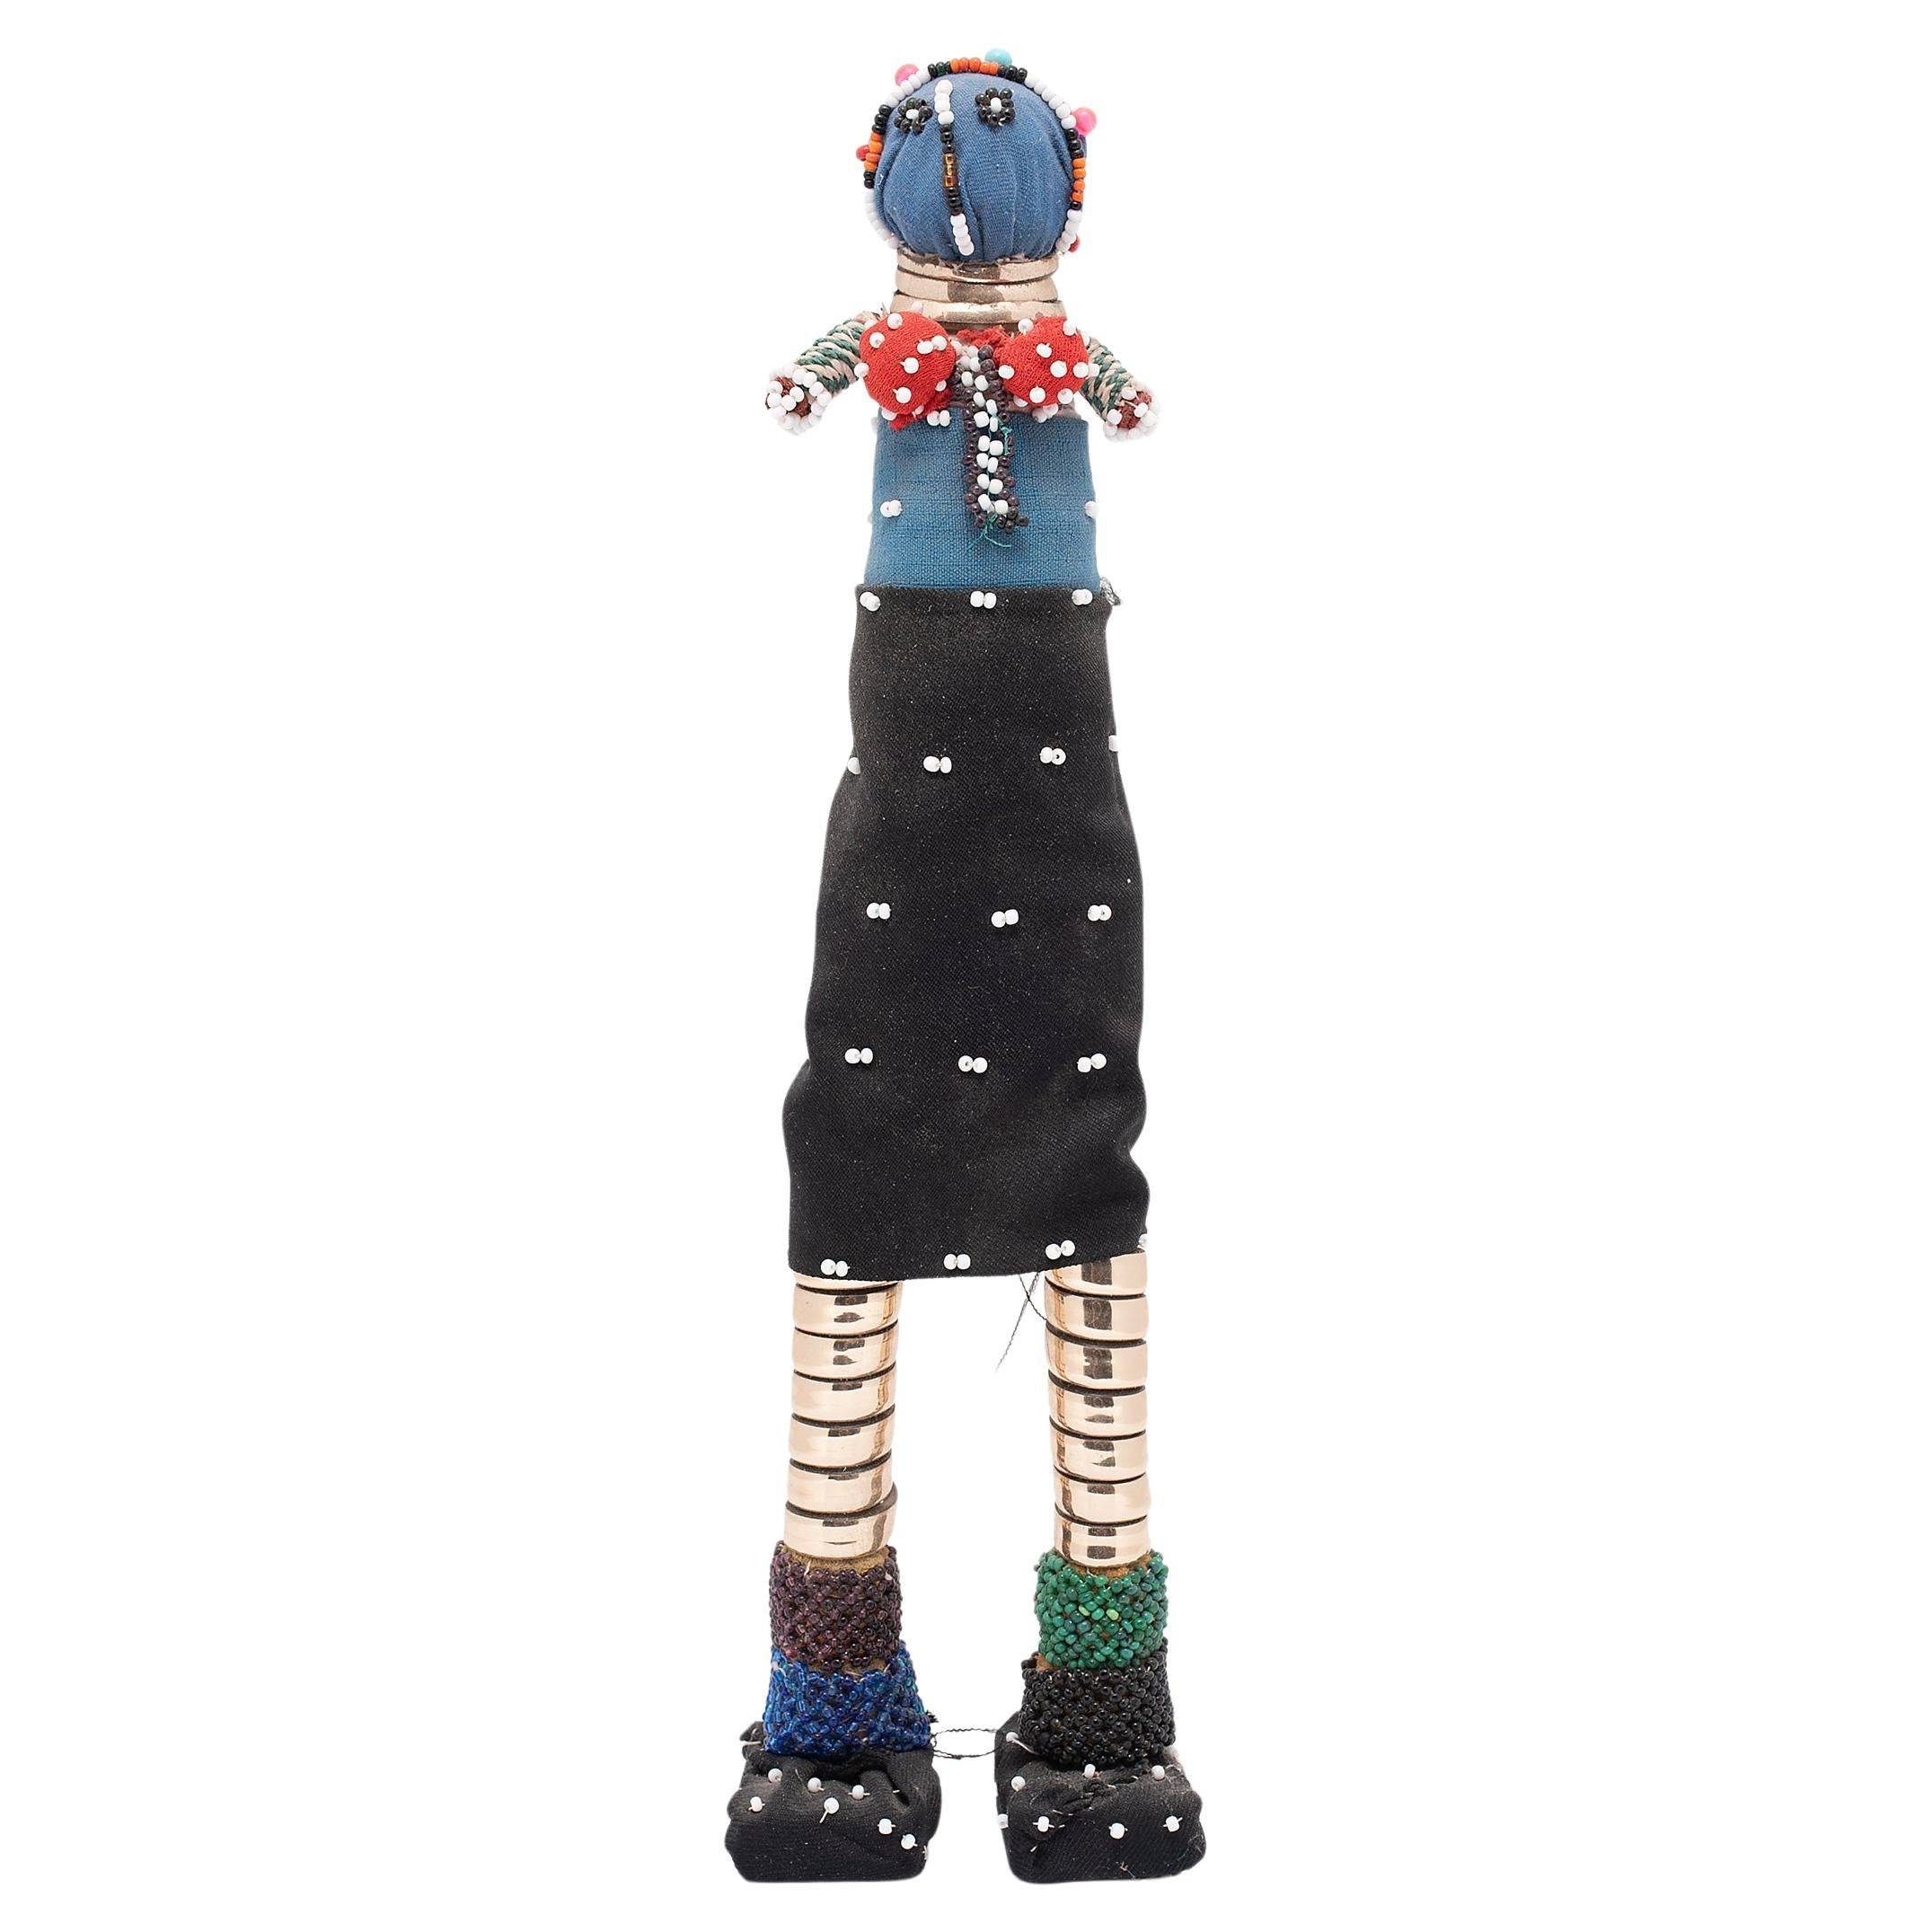 Perlenbesetzte Zeremonielle Ndebele-Puppe